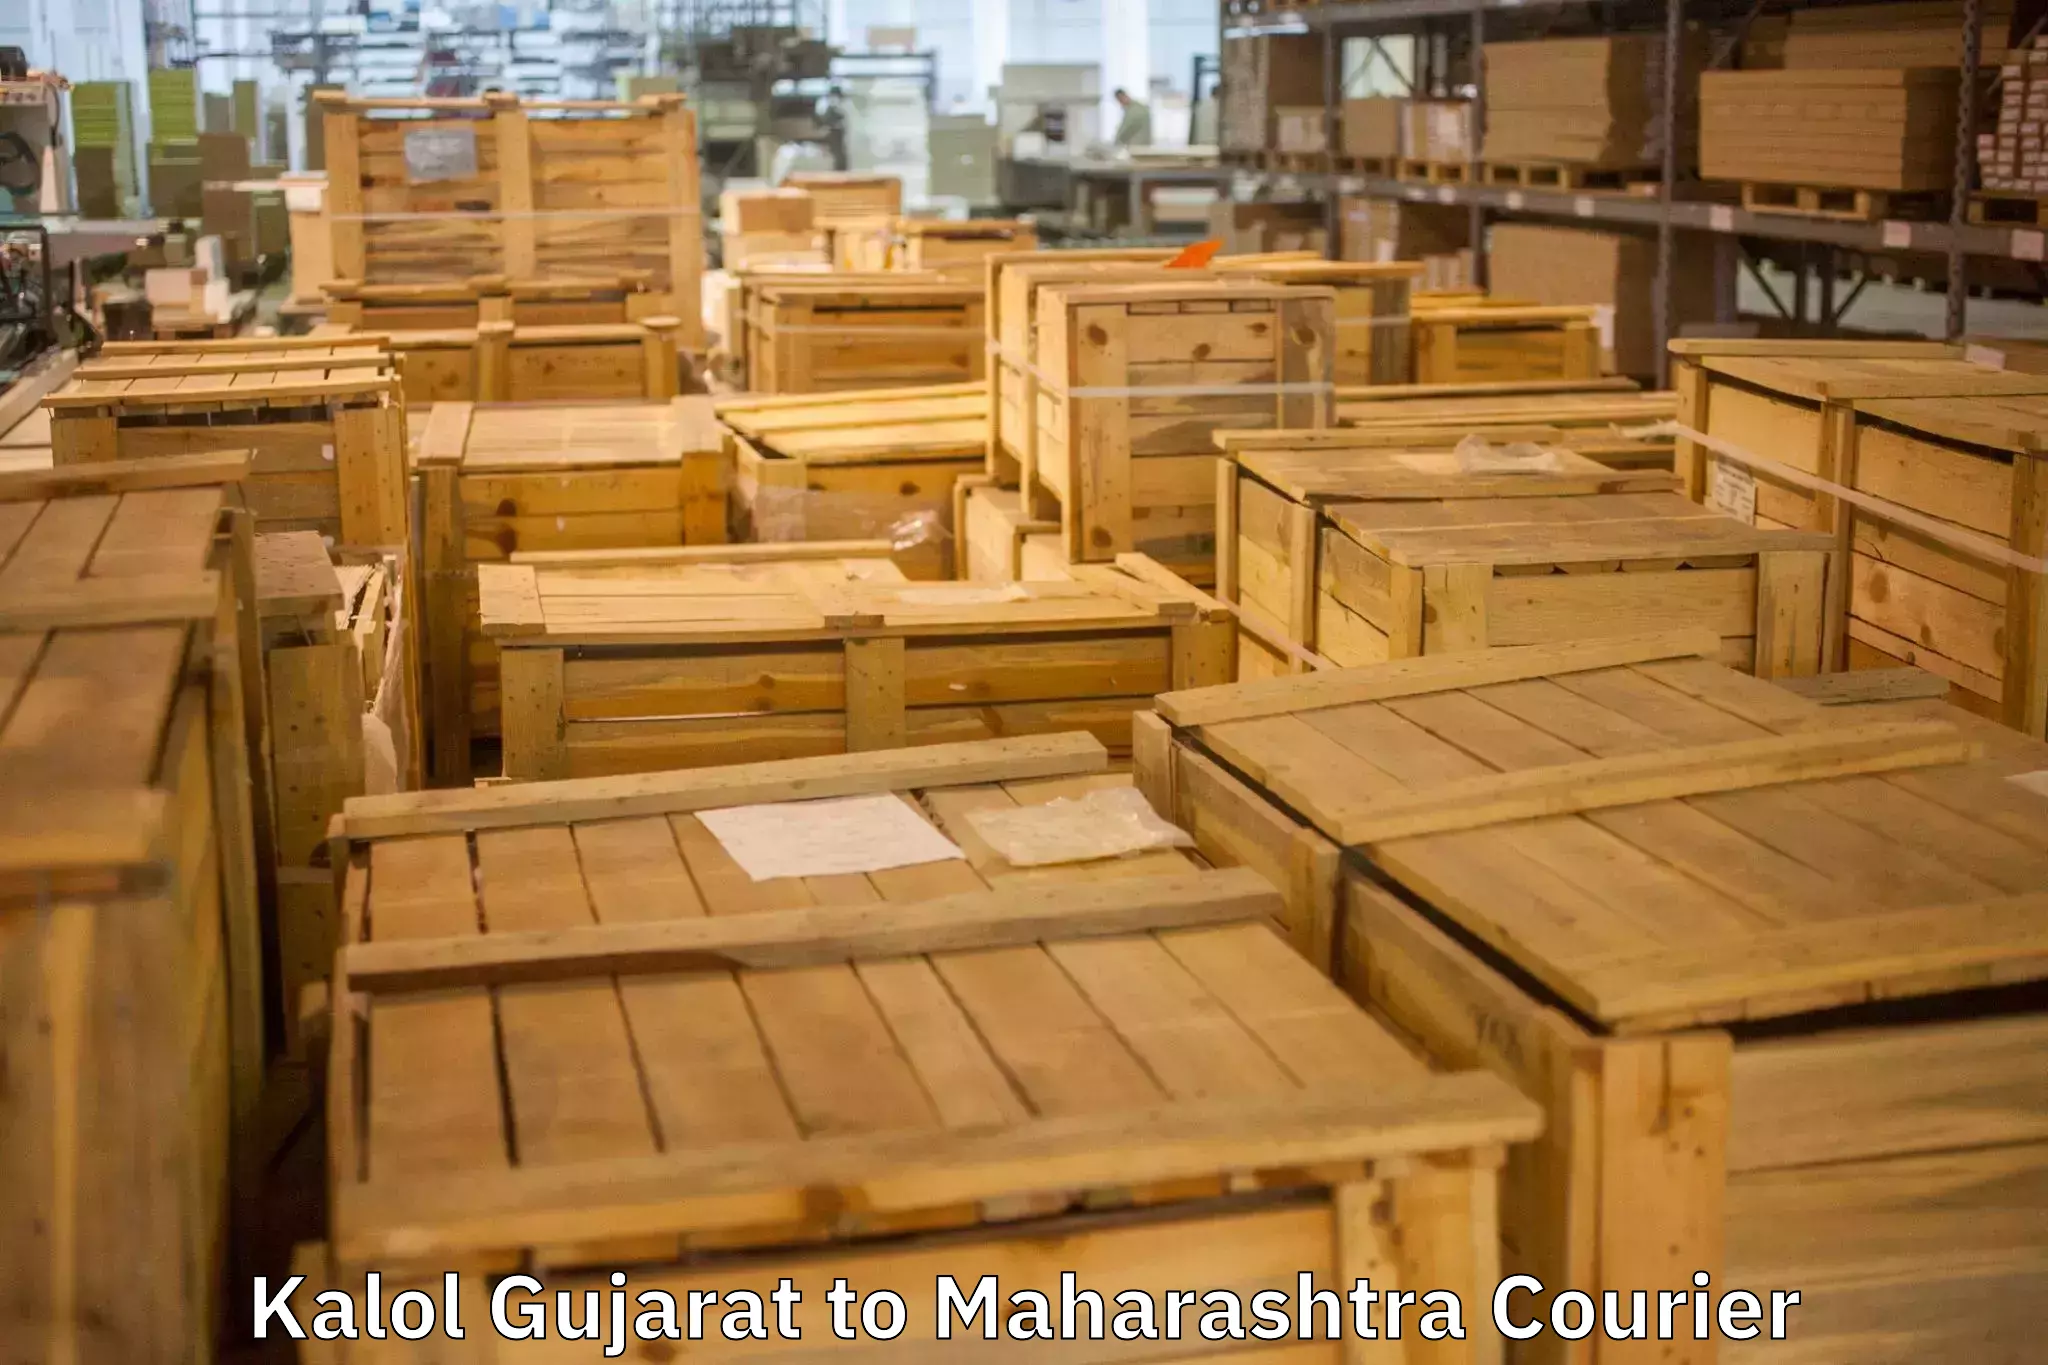 Expert packing and moving Kalol Gujarat to Sindhudurg